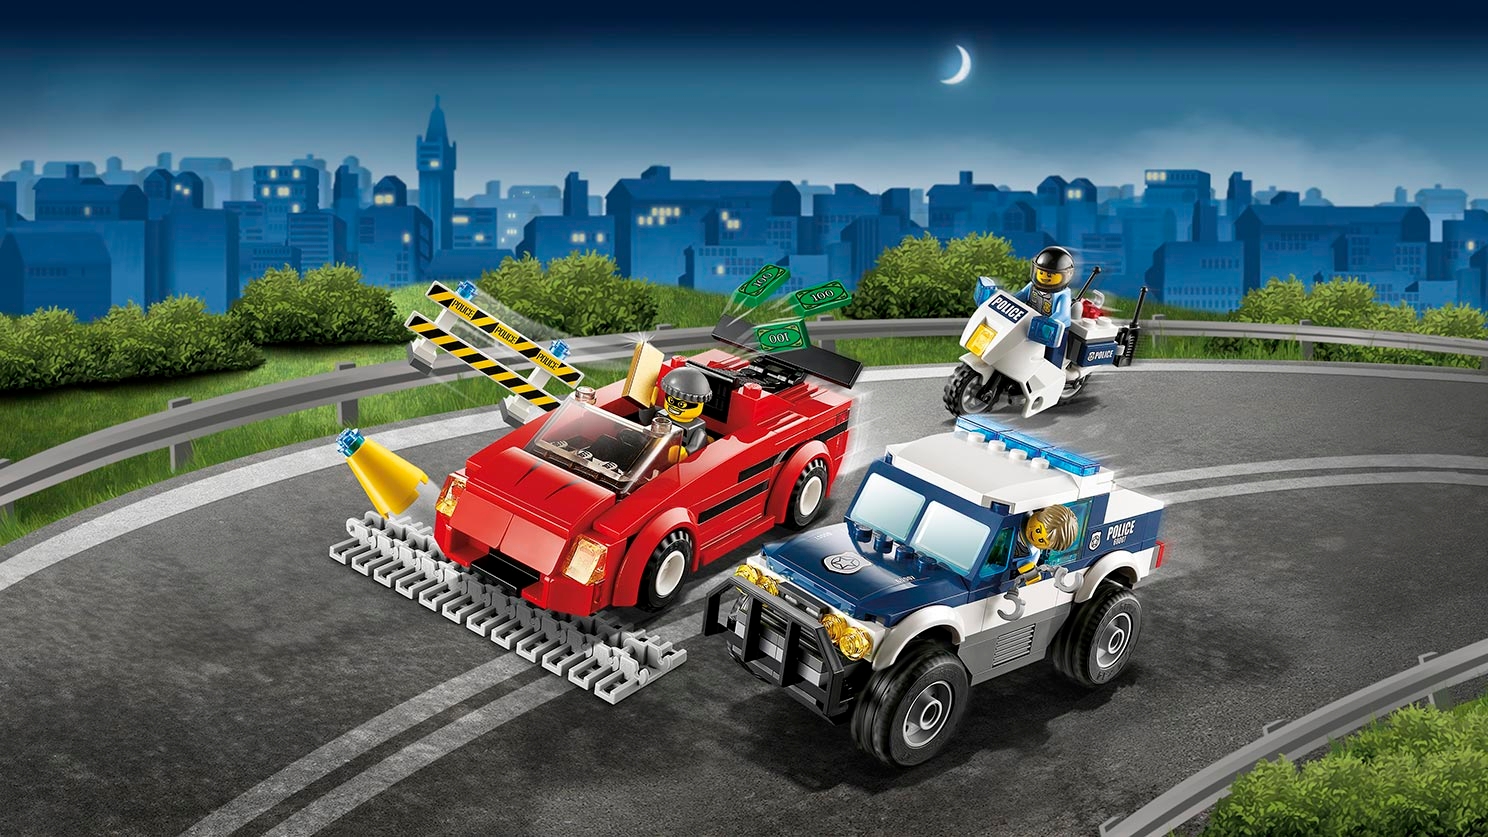 Lego City : Poursuite policière avec un camion de crème glacée